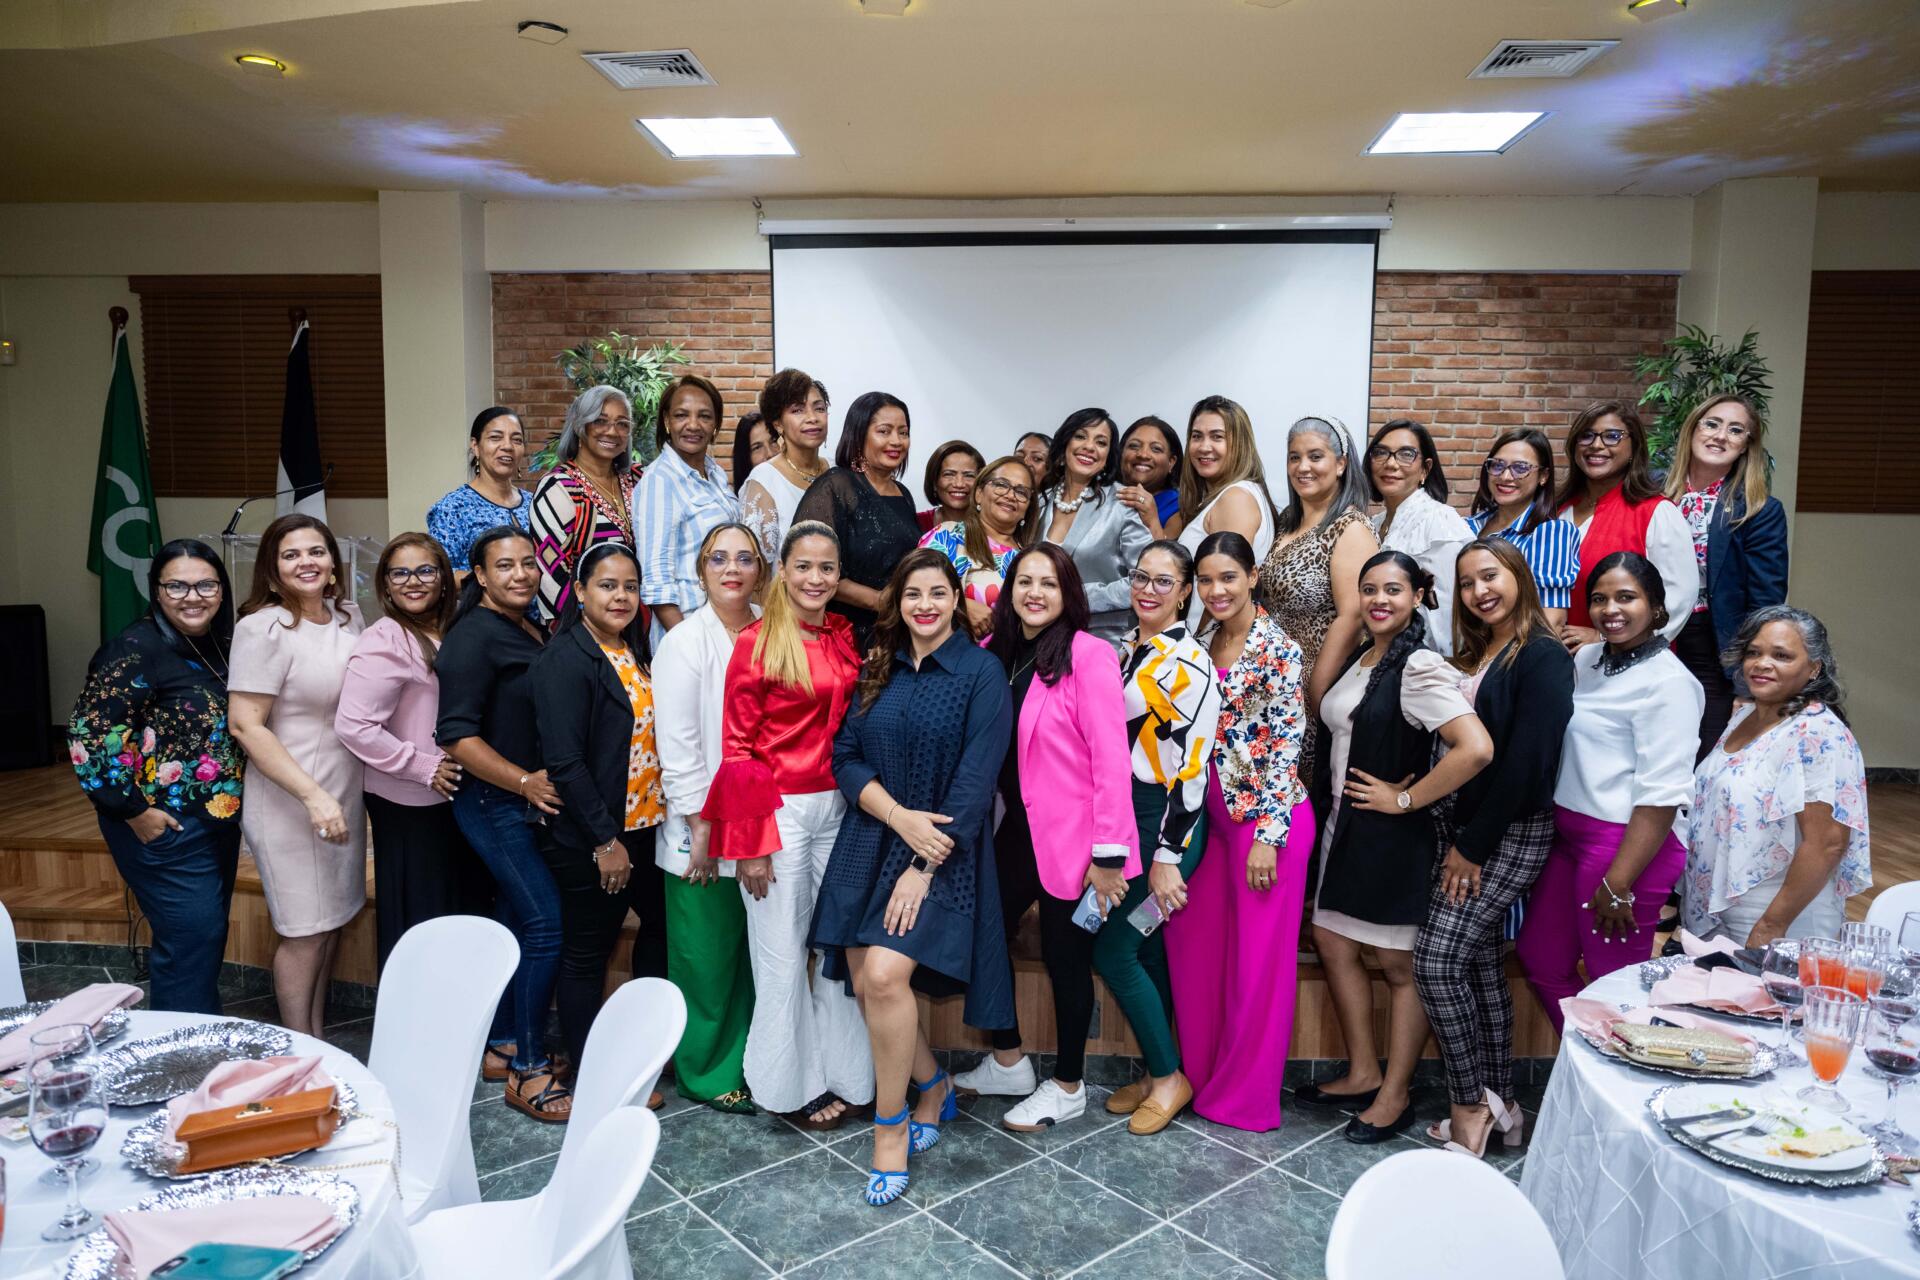 Conferencia "Mujer Motivada": Empoderamiento y Liderazgo Femenino